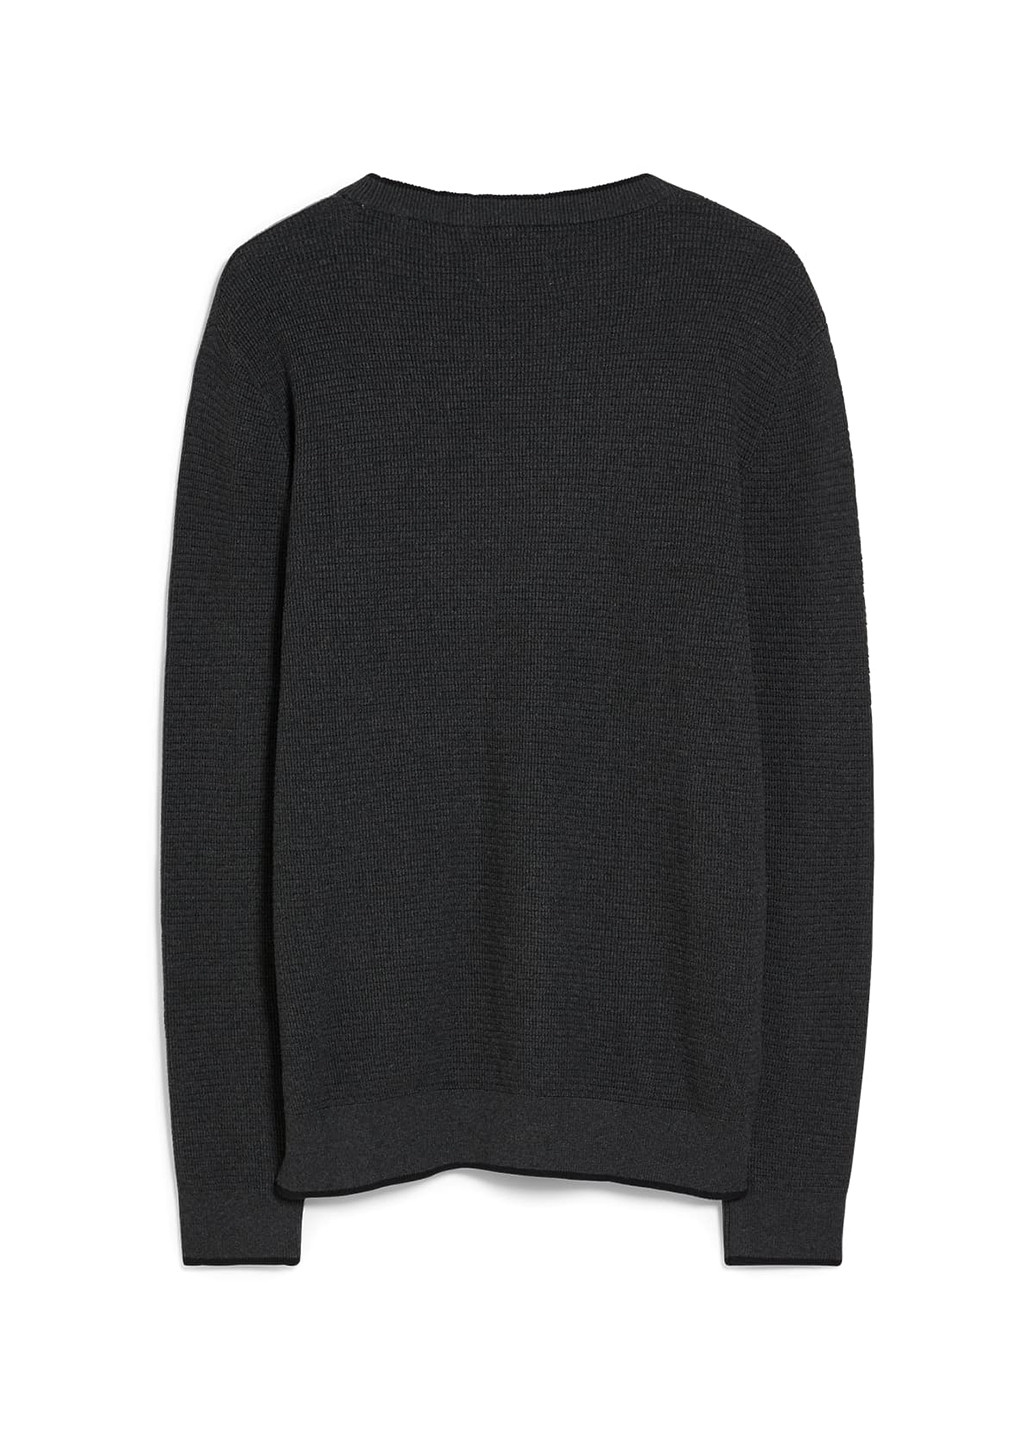 Темно-серый демисезонный свитер джемпер C&A